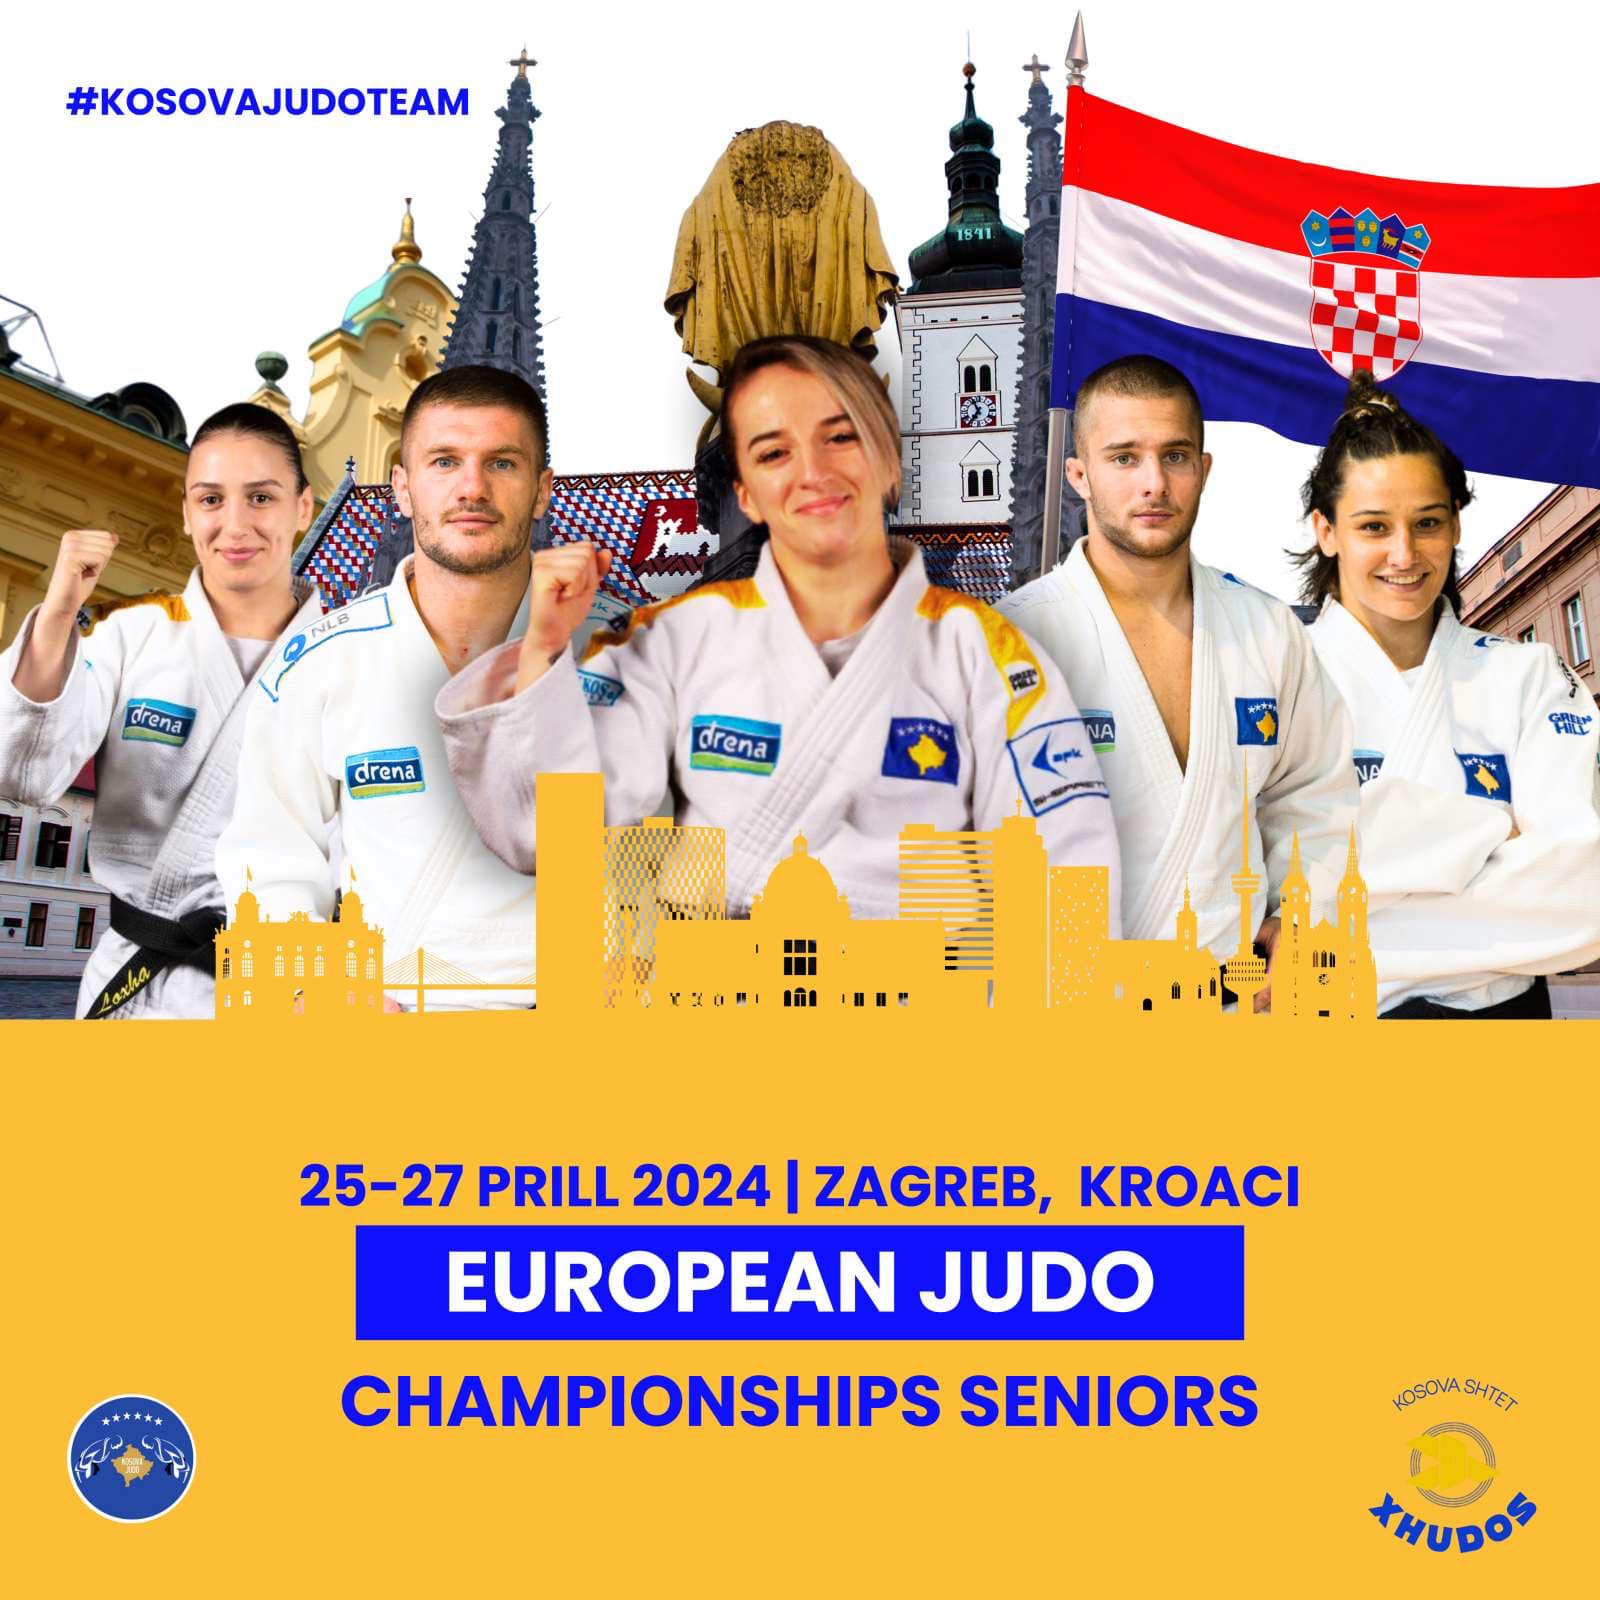 Kampionati Evropian i Xhudos mbahet me 25 27 prill  nga Kosova garojnë këta xhudistë